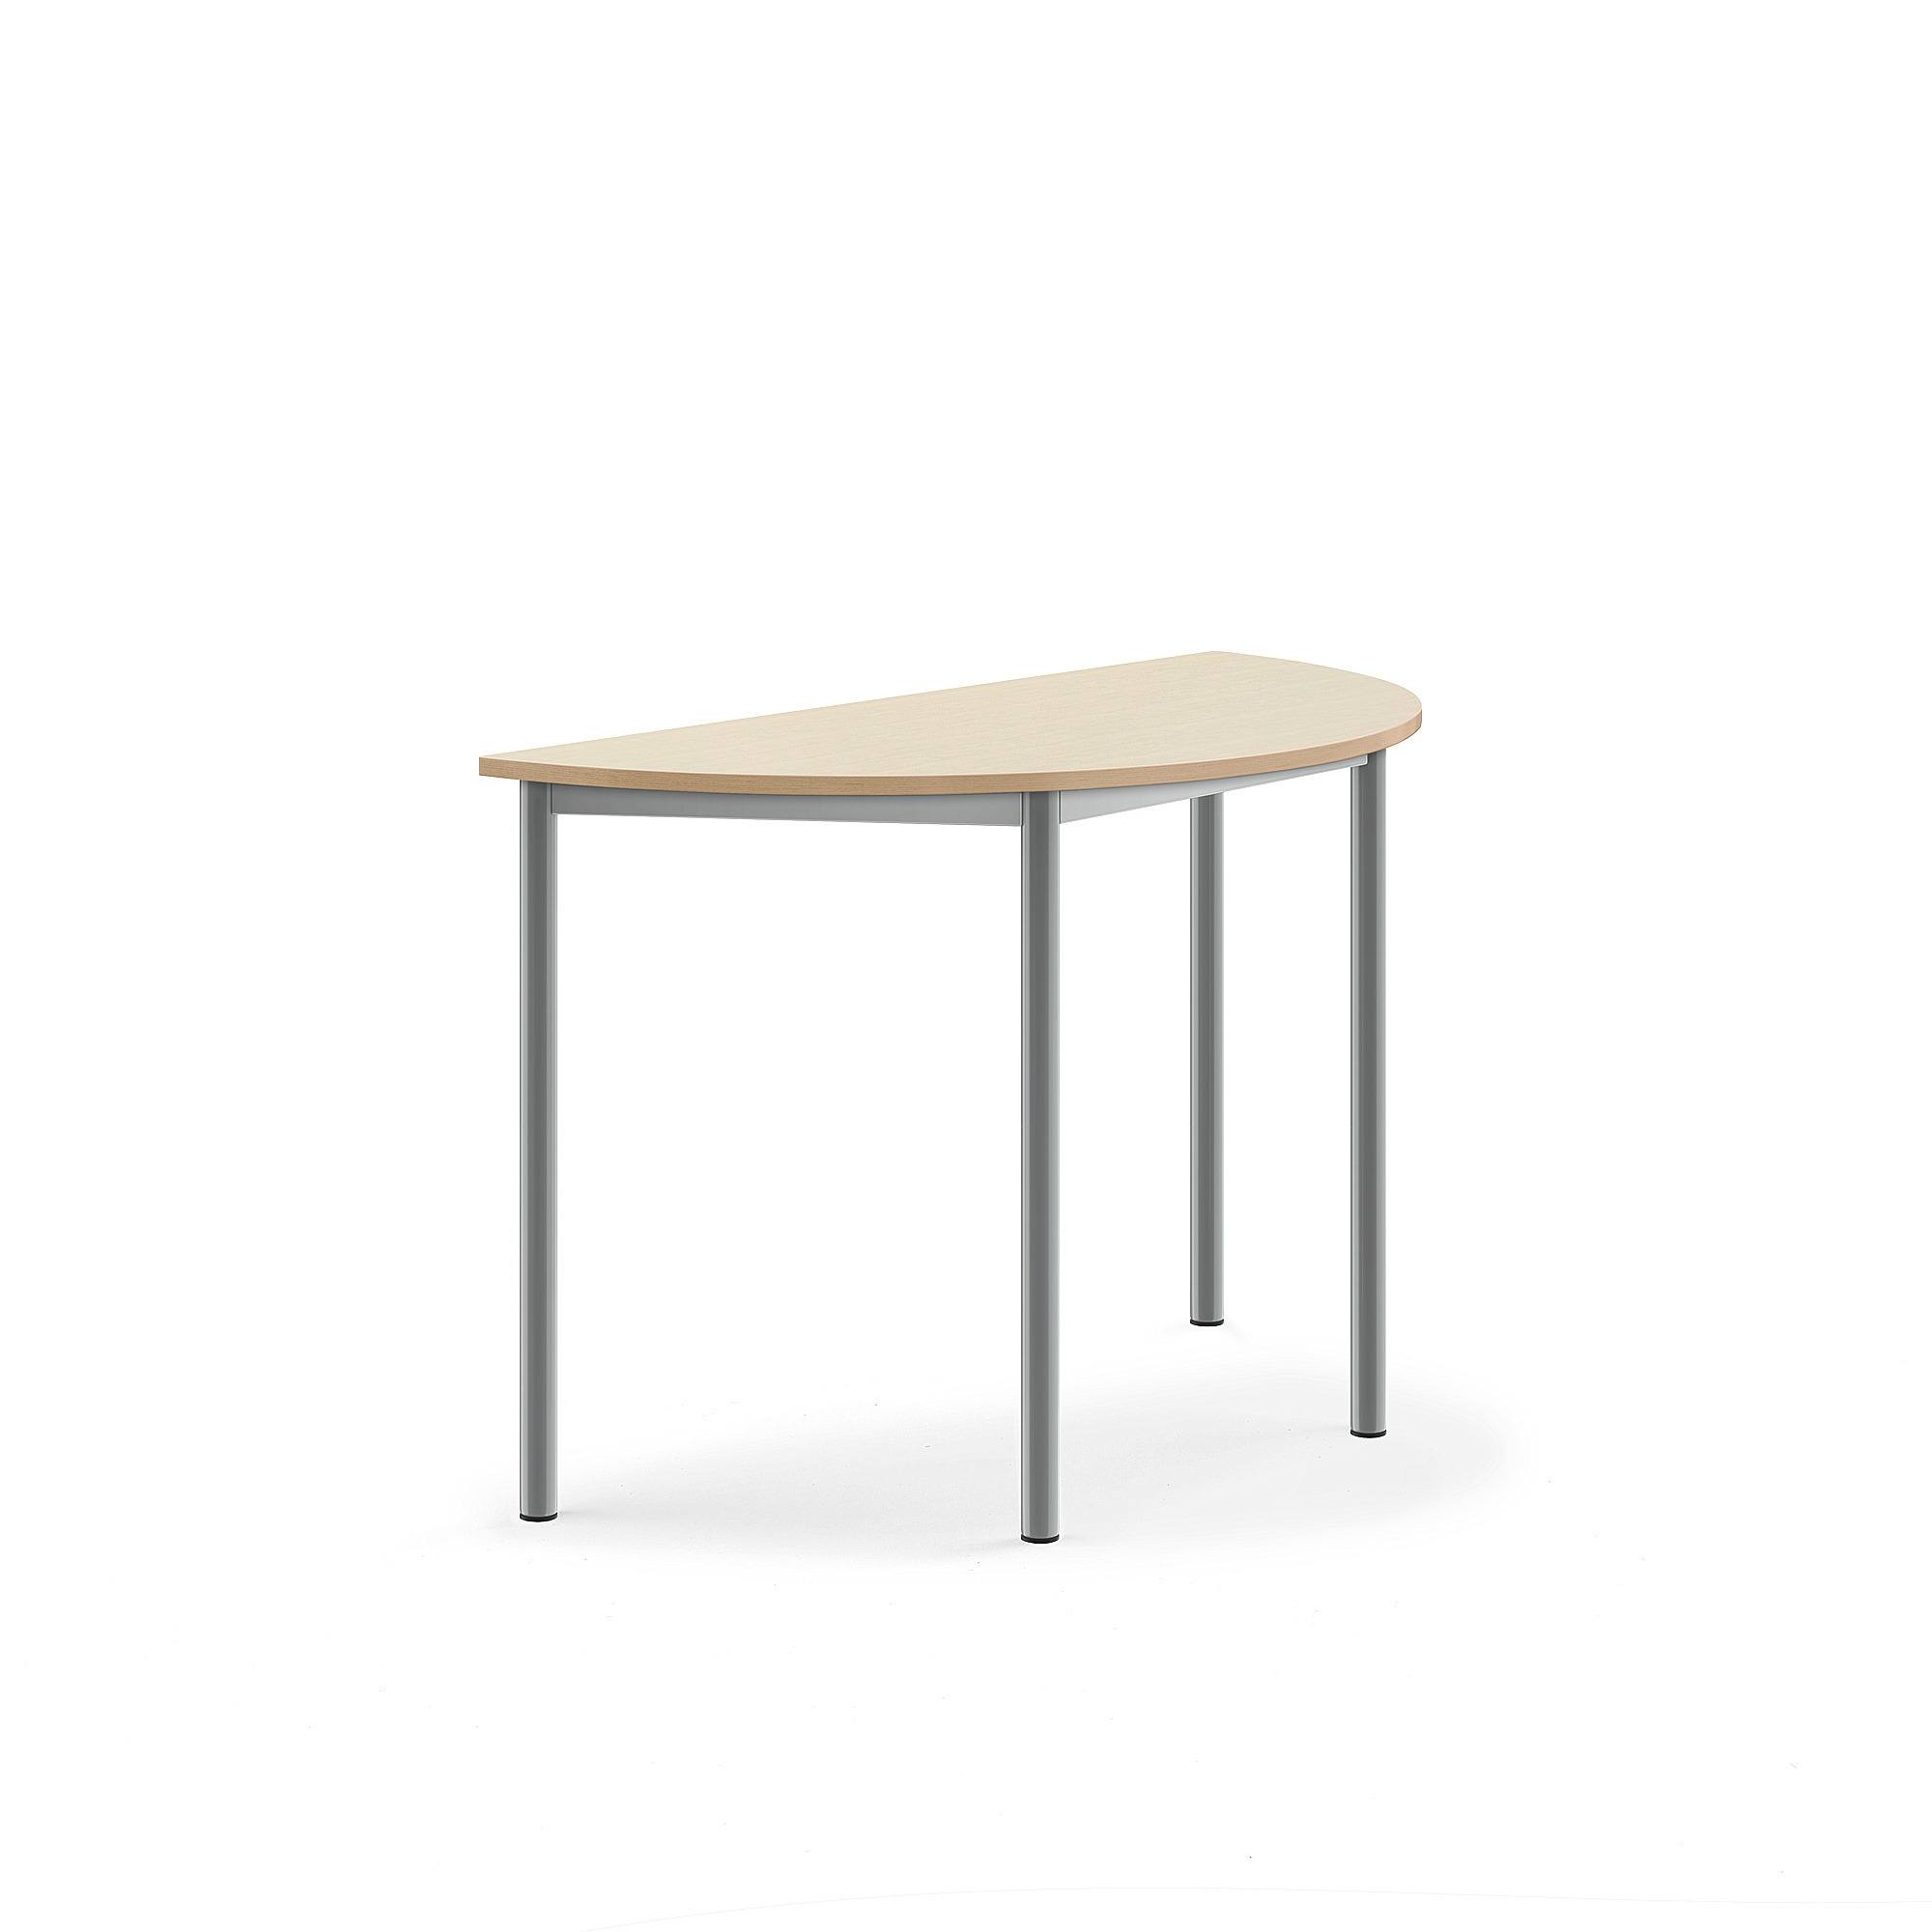 Stůl BORÅS, půlkruh, 1200x600x760 mm, stříbrné nohy,HPL deska, bříza